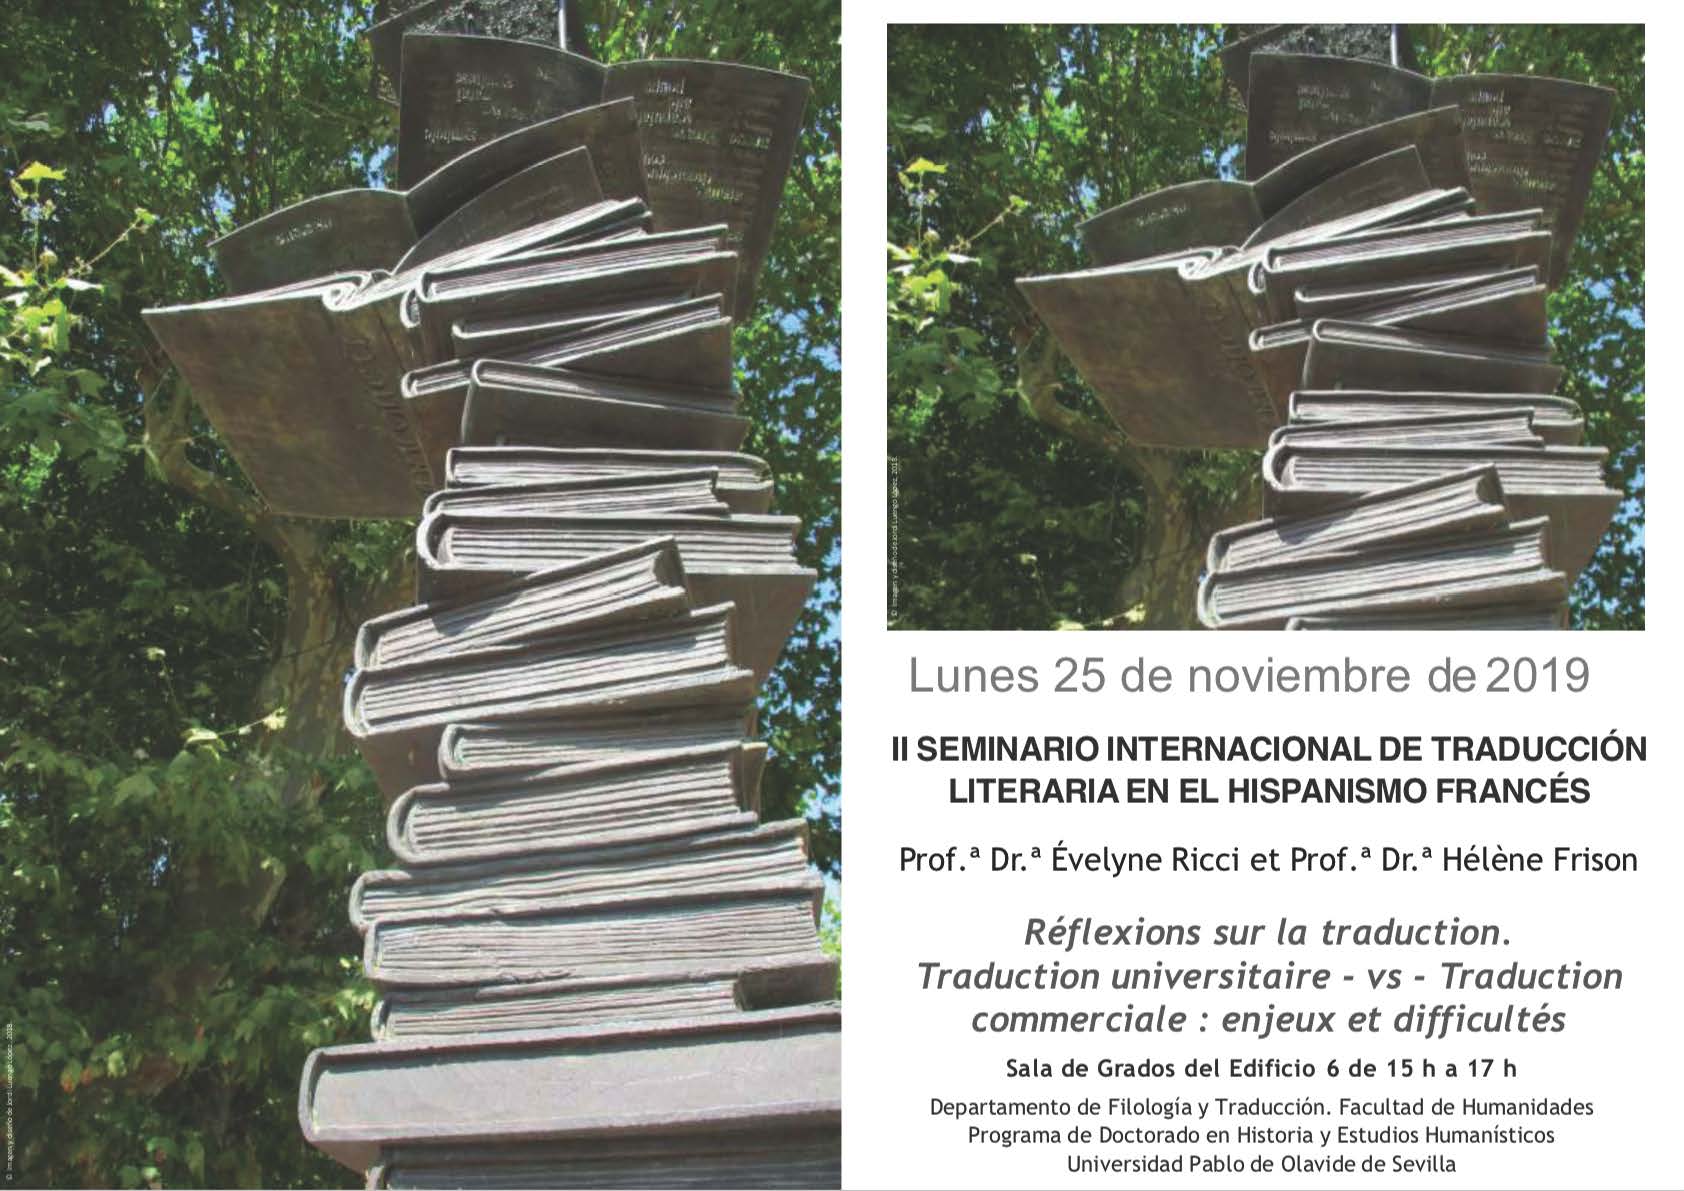 De¿pliant. II Seminario Internacional de Traduccio¿n Literaria en el Hispanismo france¿s (1)_Página_1